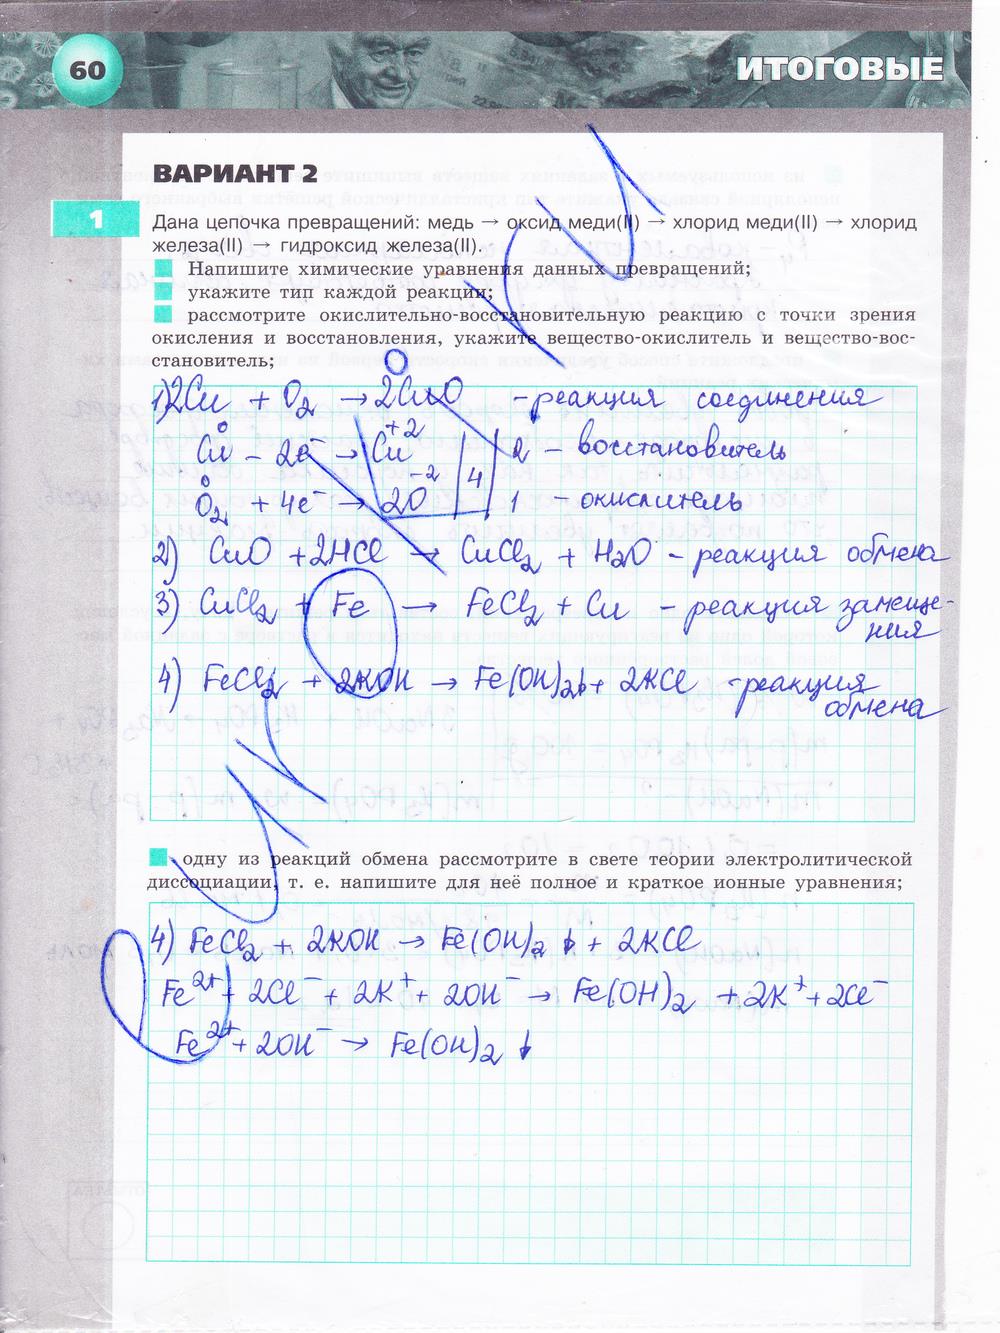 гдз 9 класс тетрадь-экзаменатор страница 60 химия Бобылева, Бирюлина